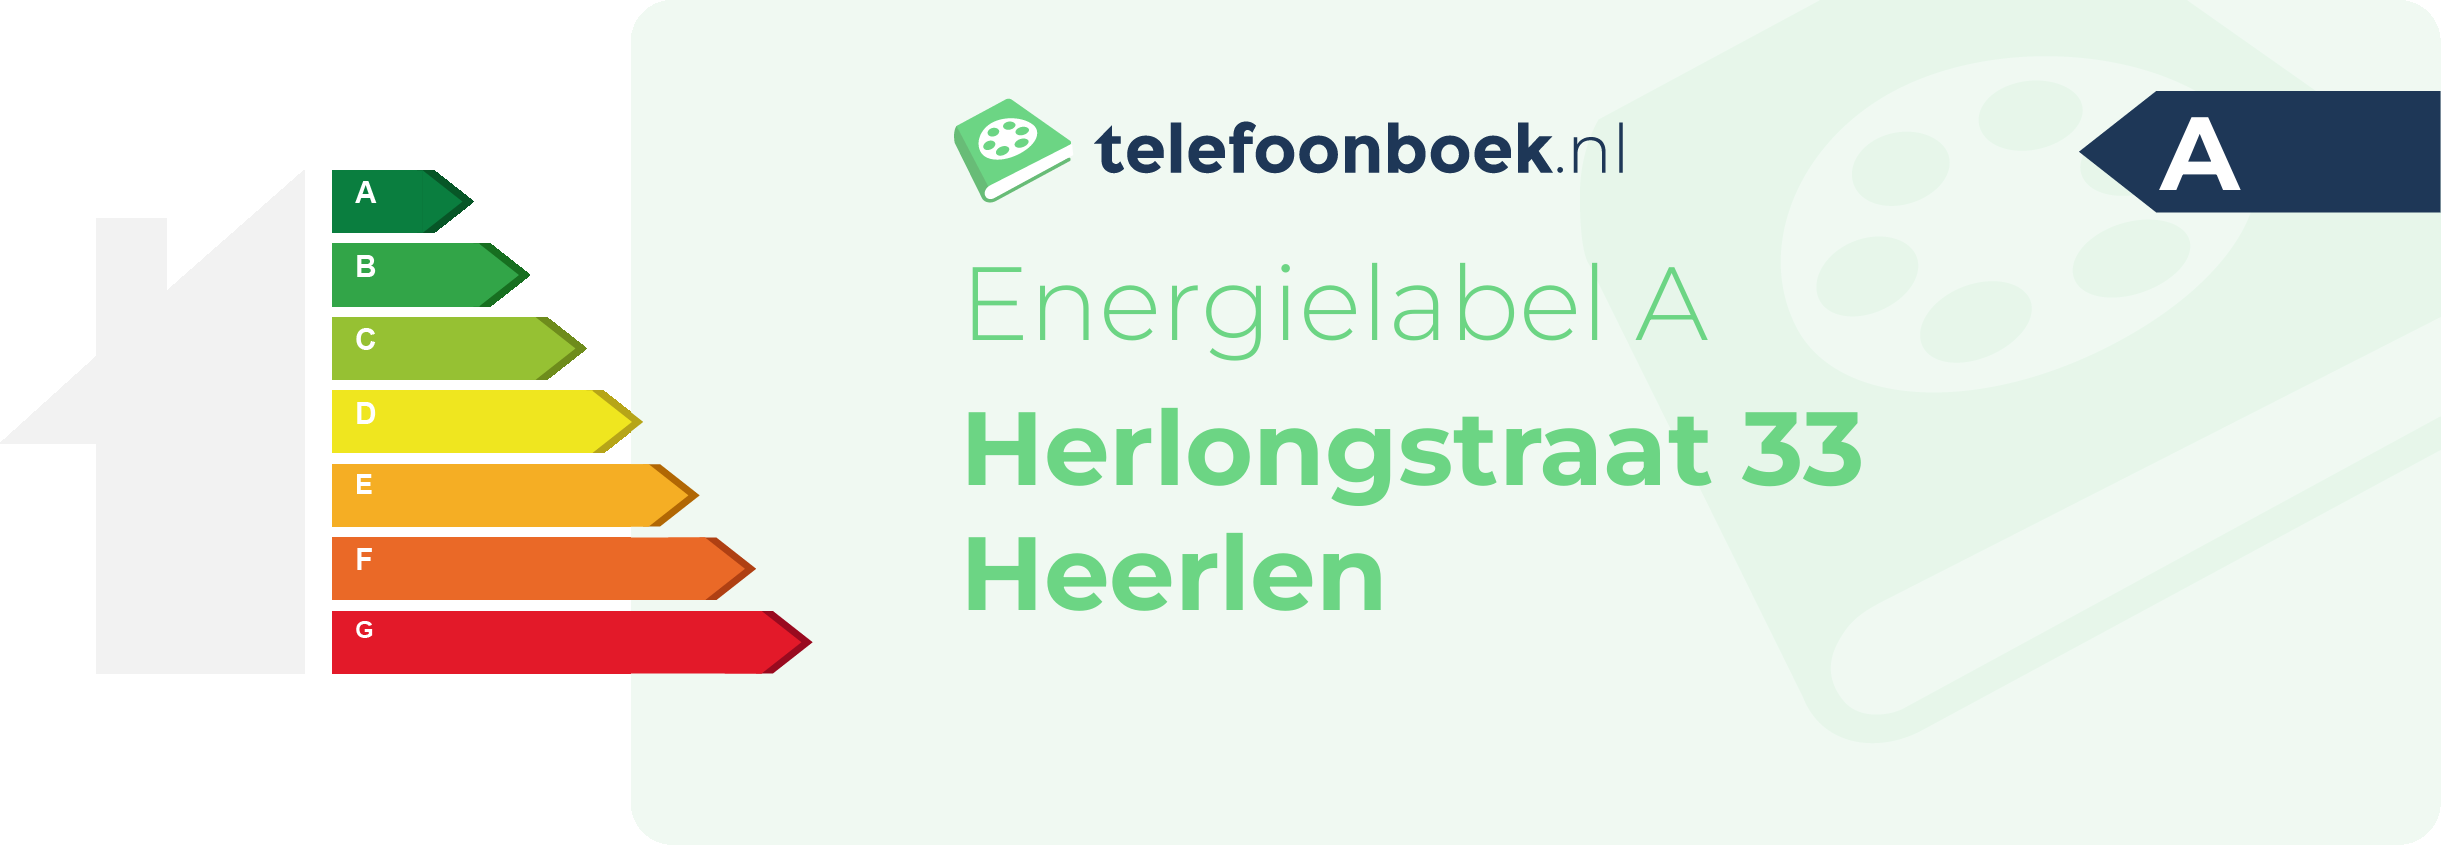 Energielabel Herlongstraat 33 Heerlen